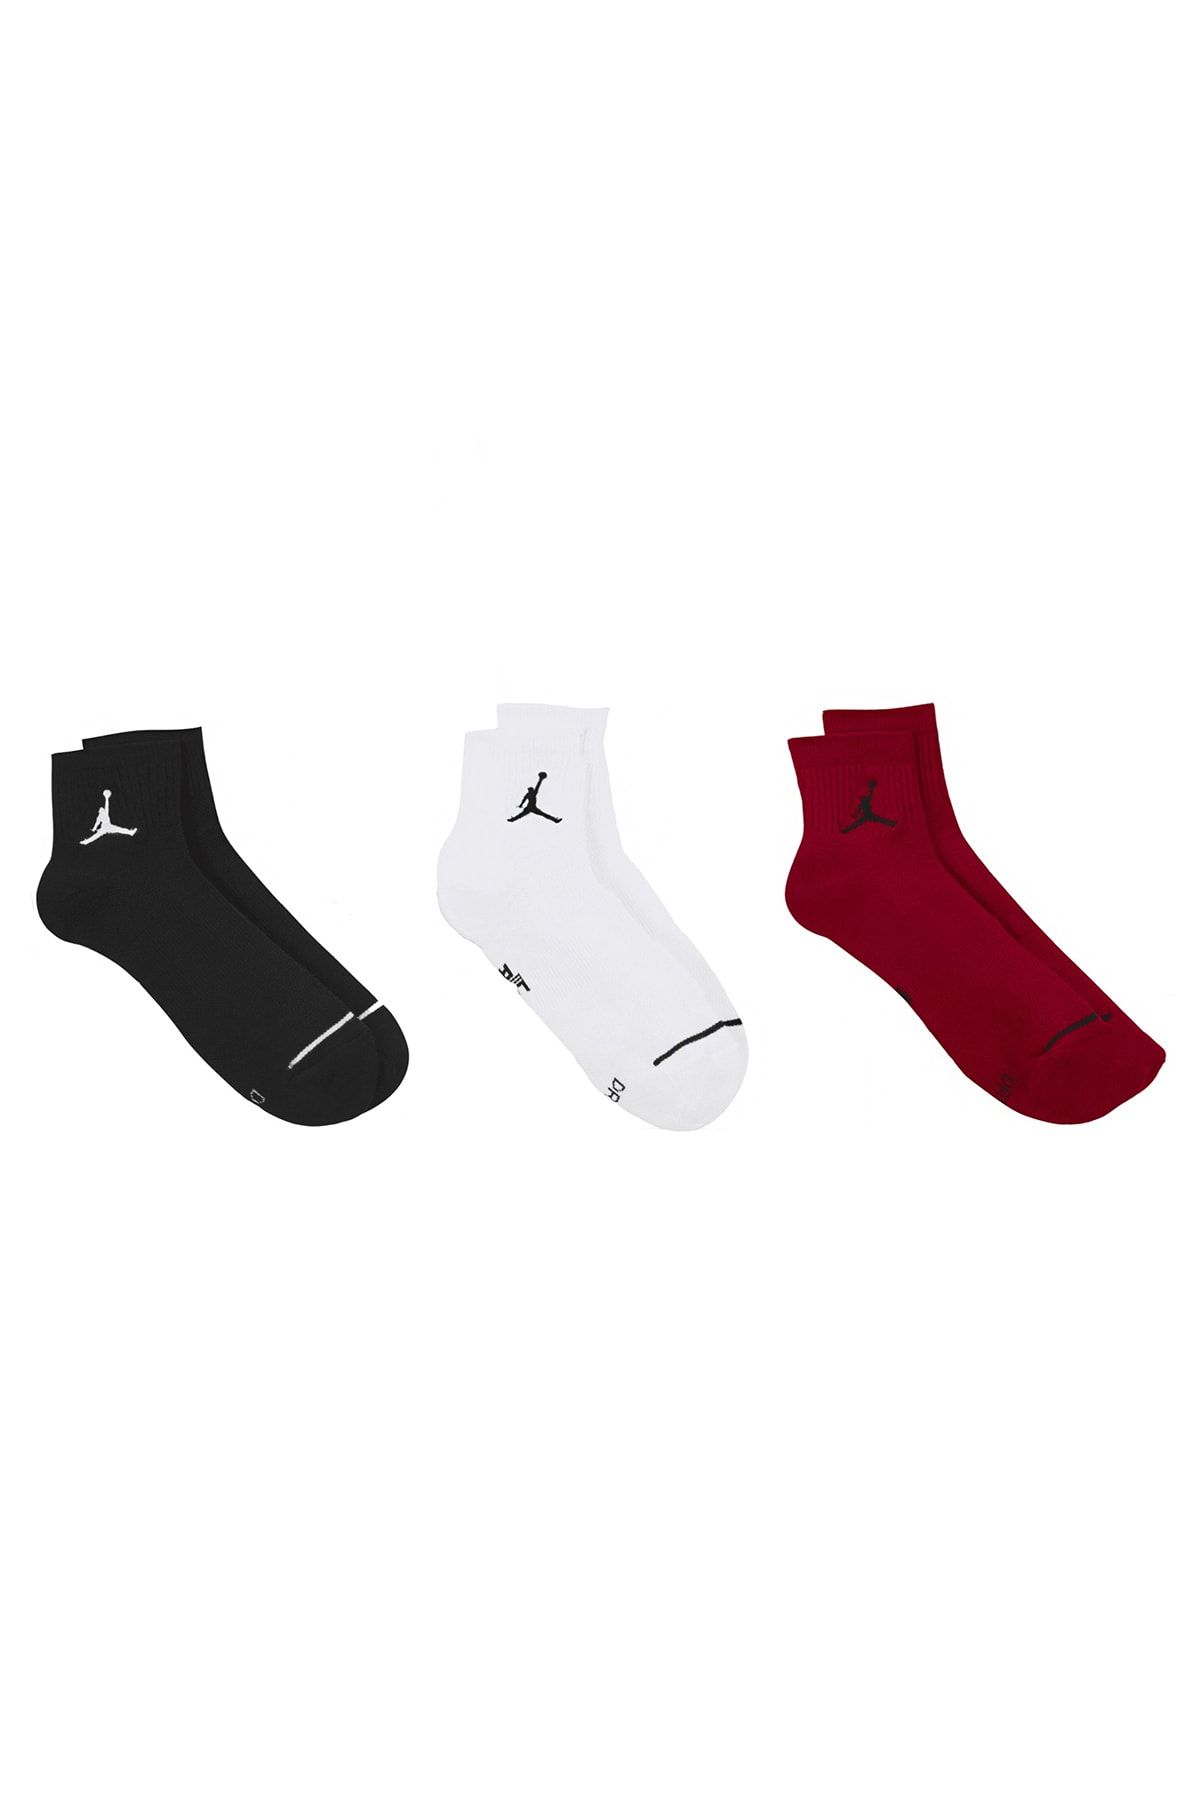 Nike Jordan Erkek 3'lü Çorap Sx5544-011